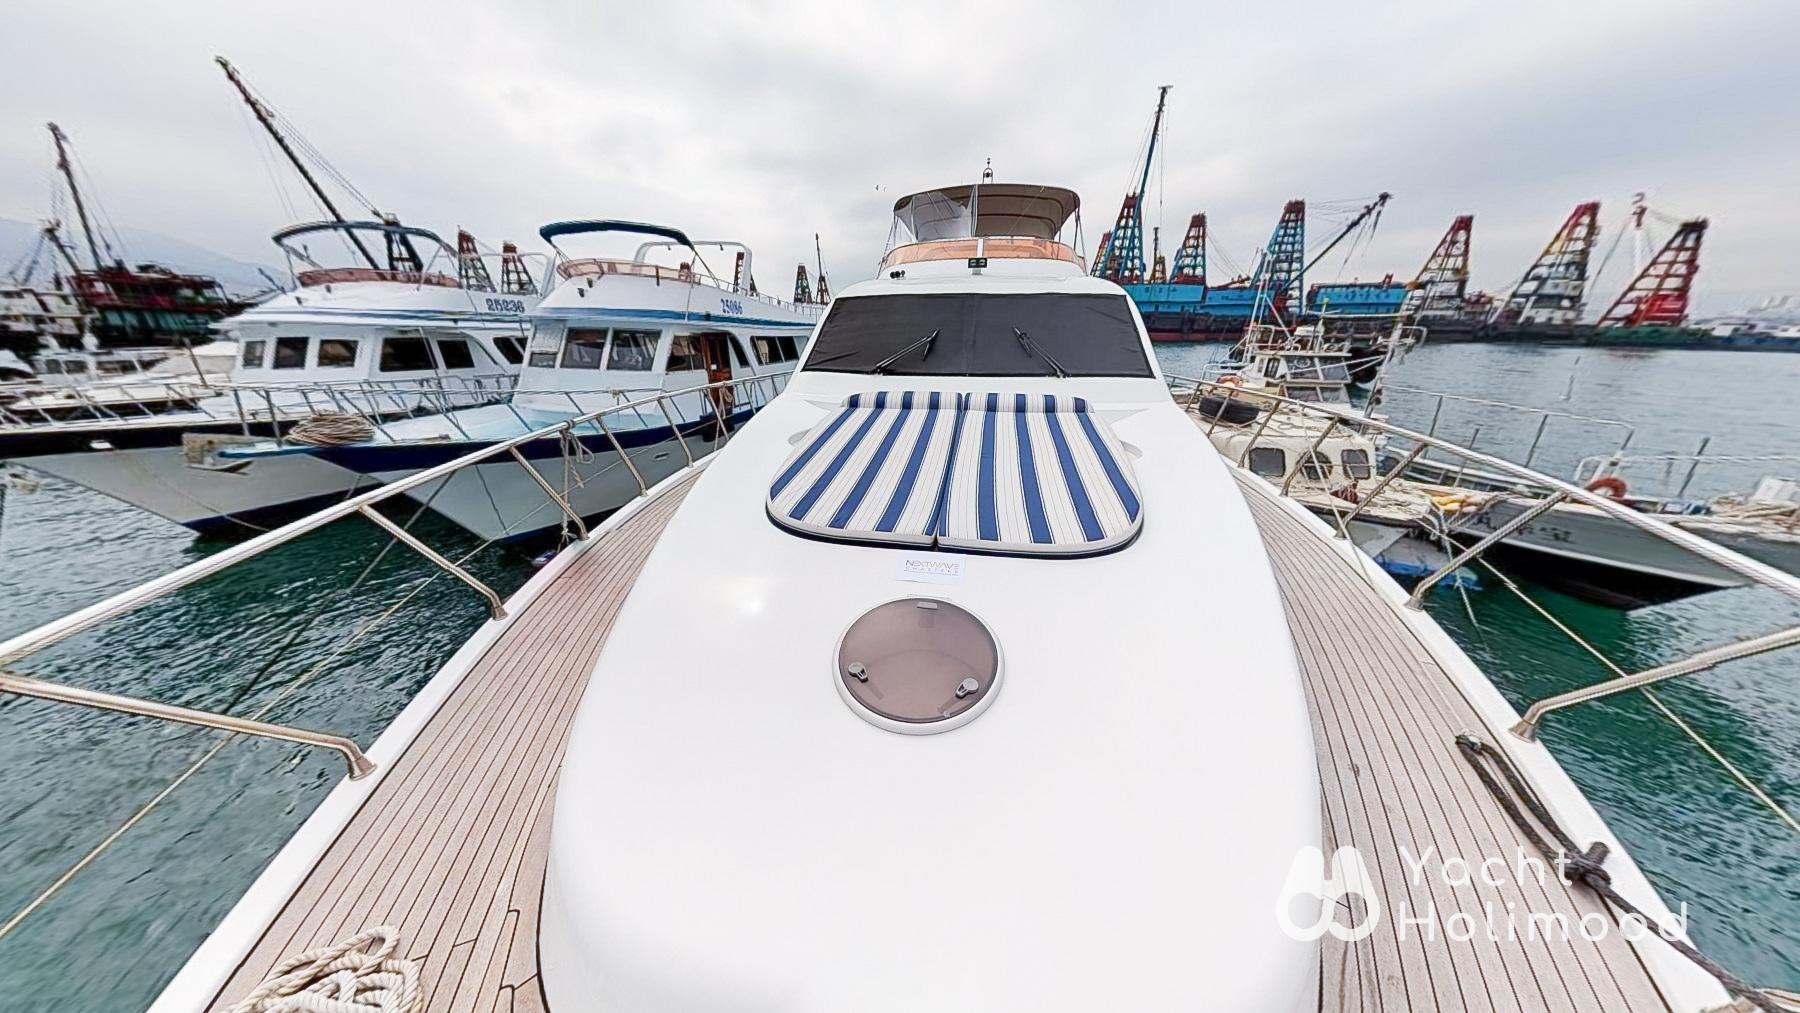 CP04 [王牌系列] 豪華西式遊艇全包限定套餐 (到會, 飲品, 水上彈床及浮毯) 低至$599/位起 5